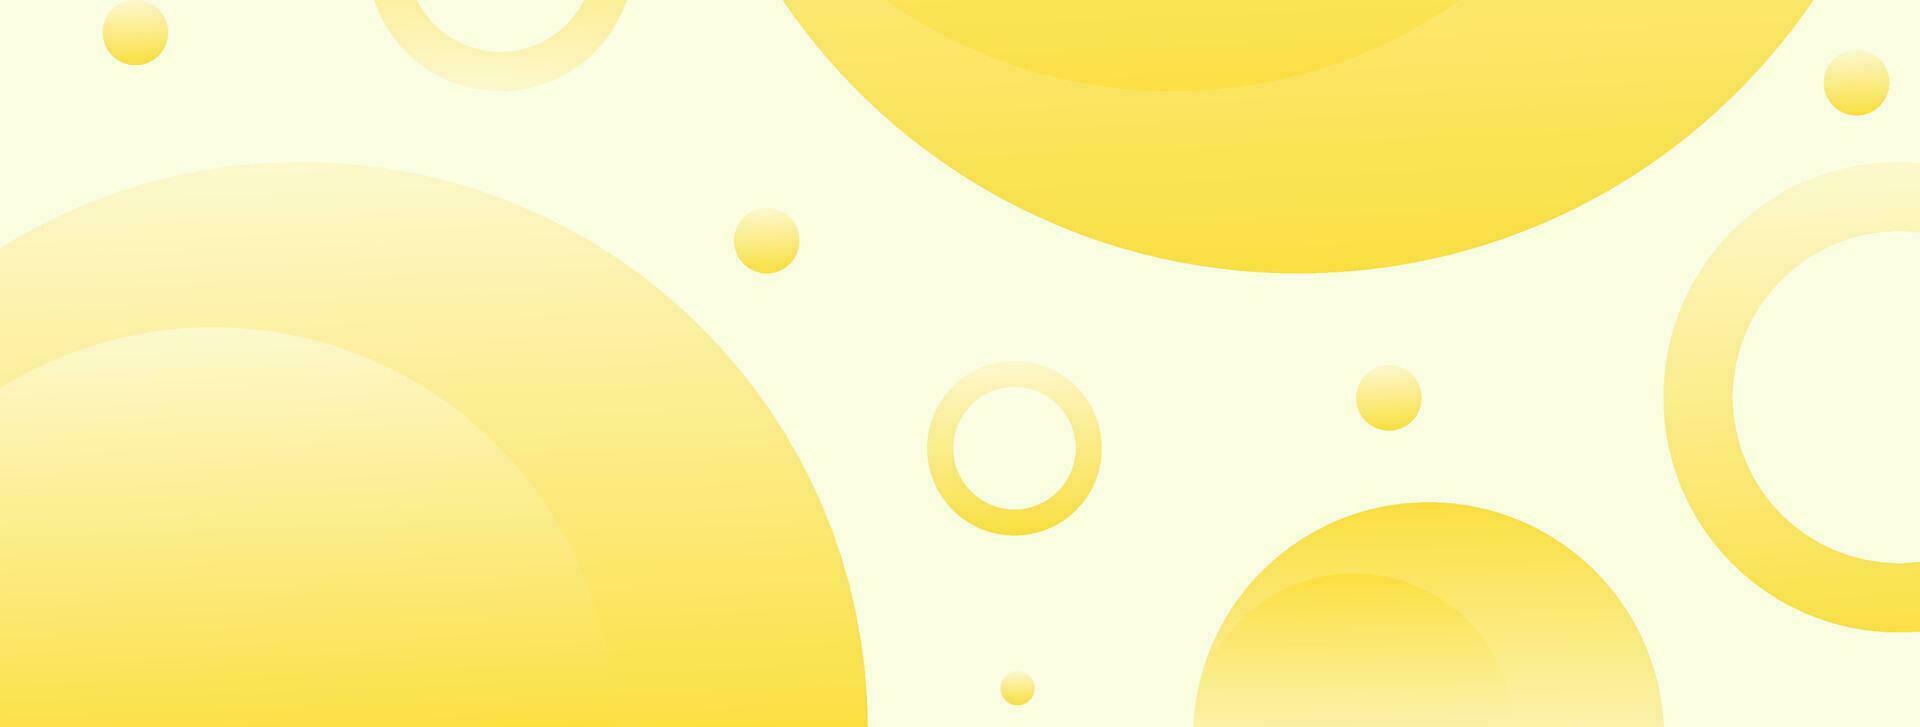 amarelo abstrato fundo geométrico círculo forma bandeira vetor